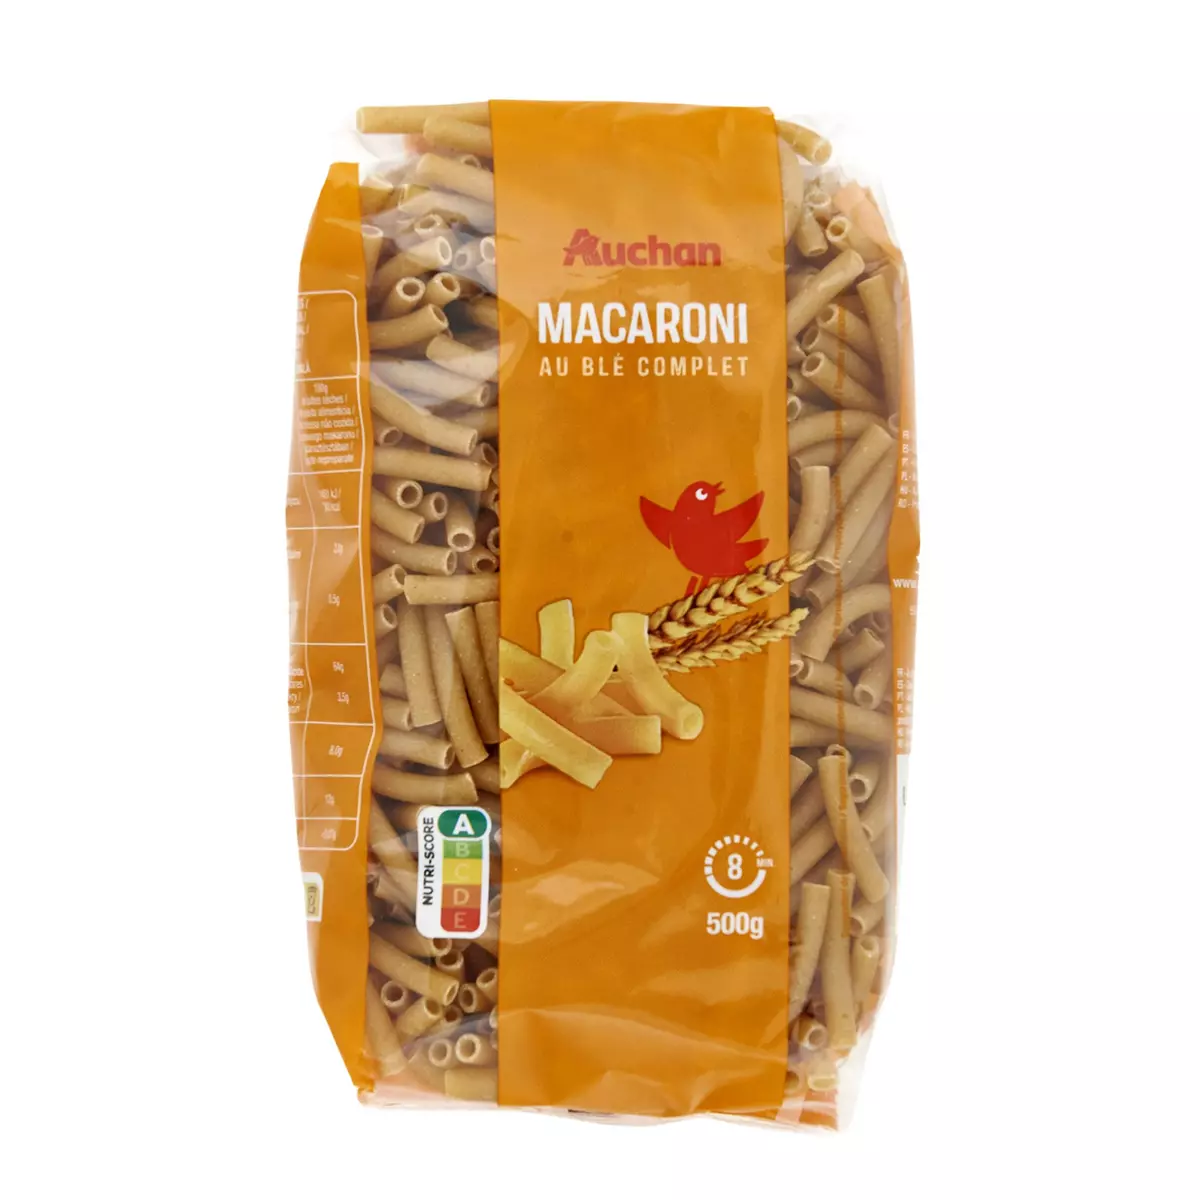 AUCHAN Macaroni au blé complet 500g